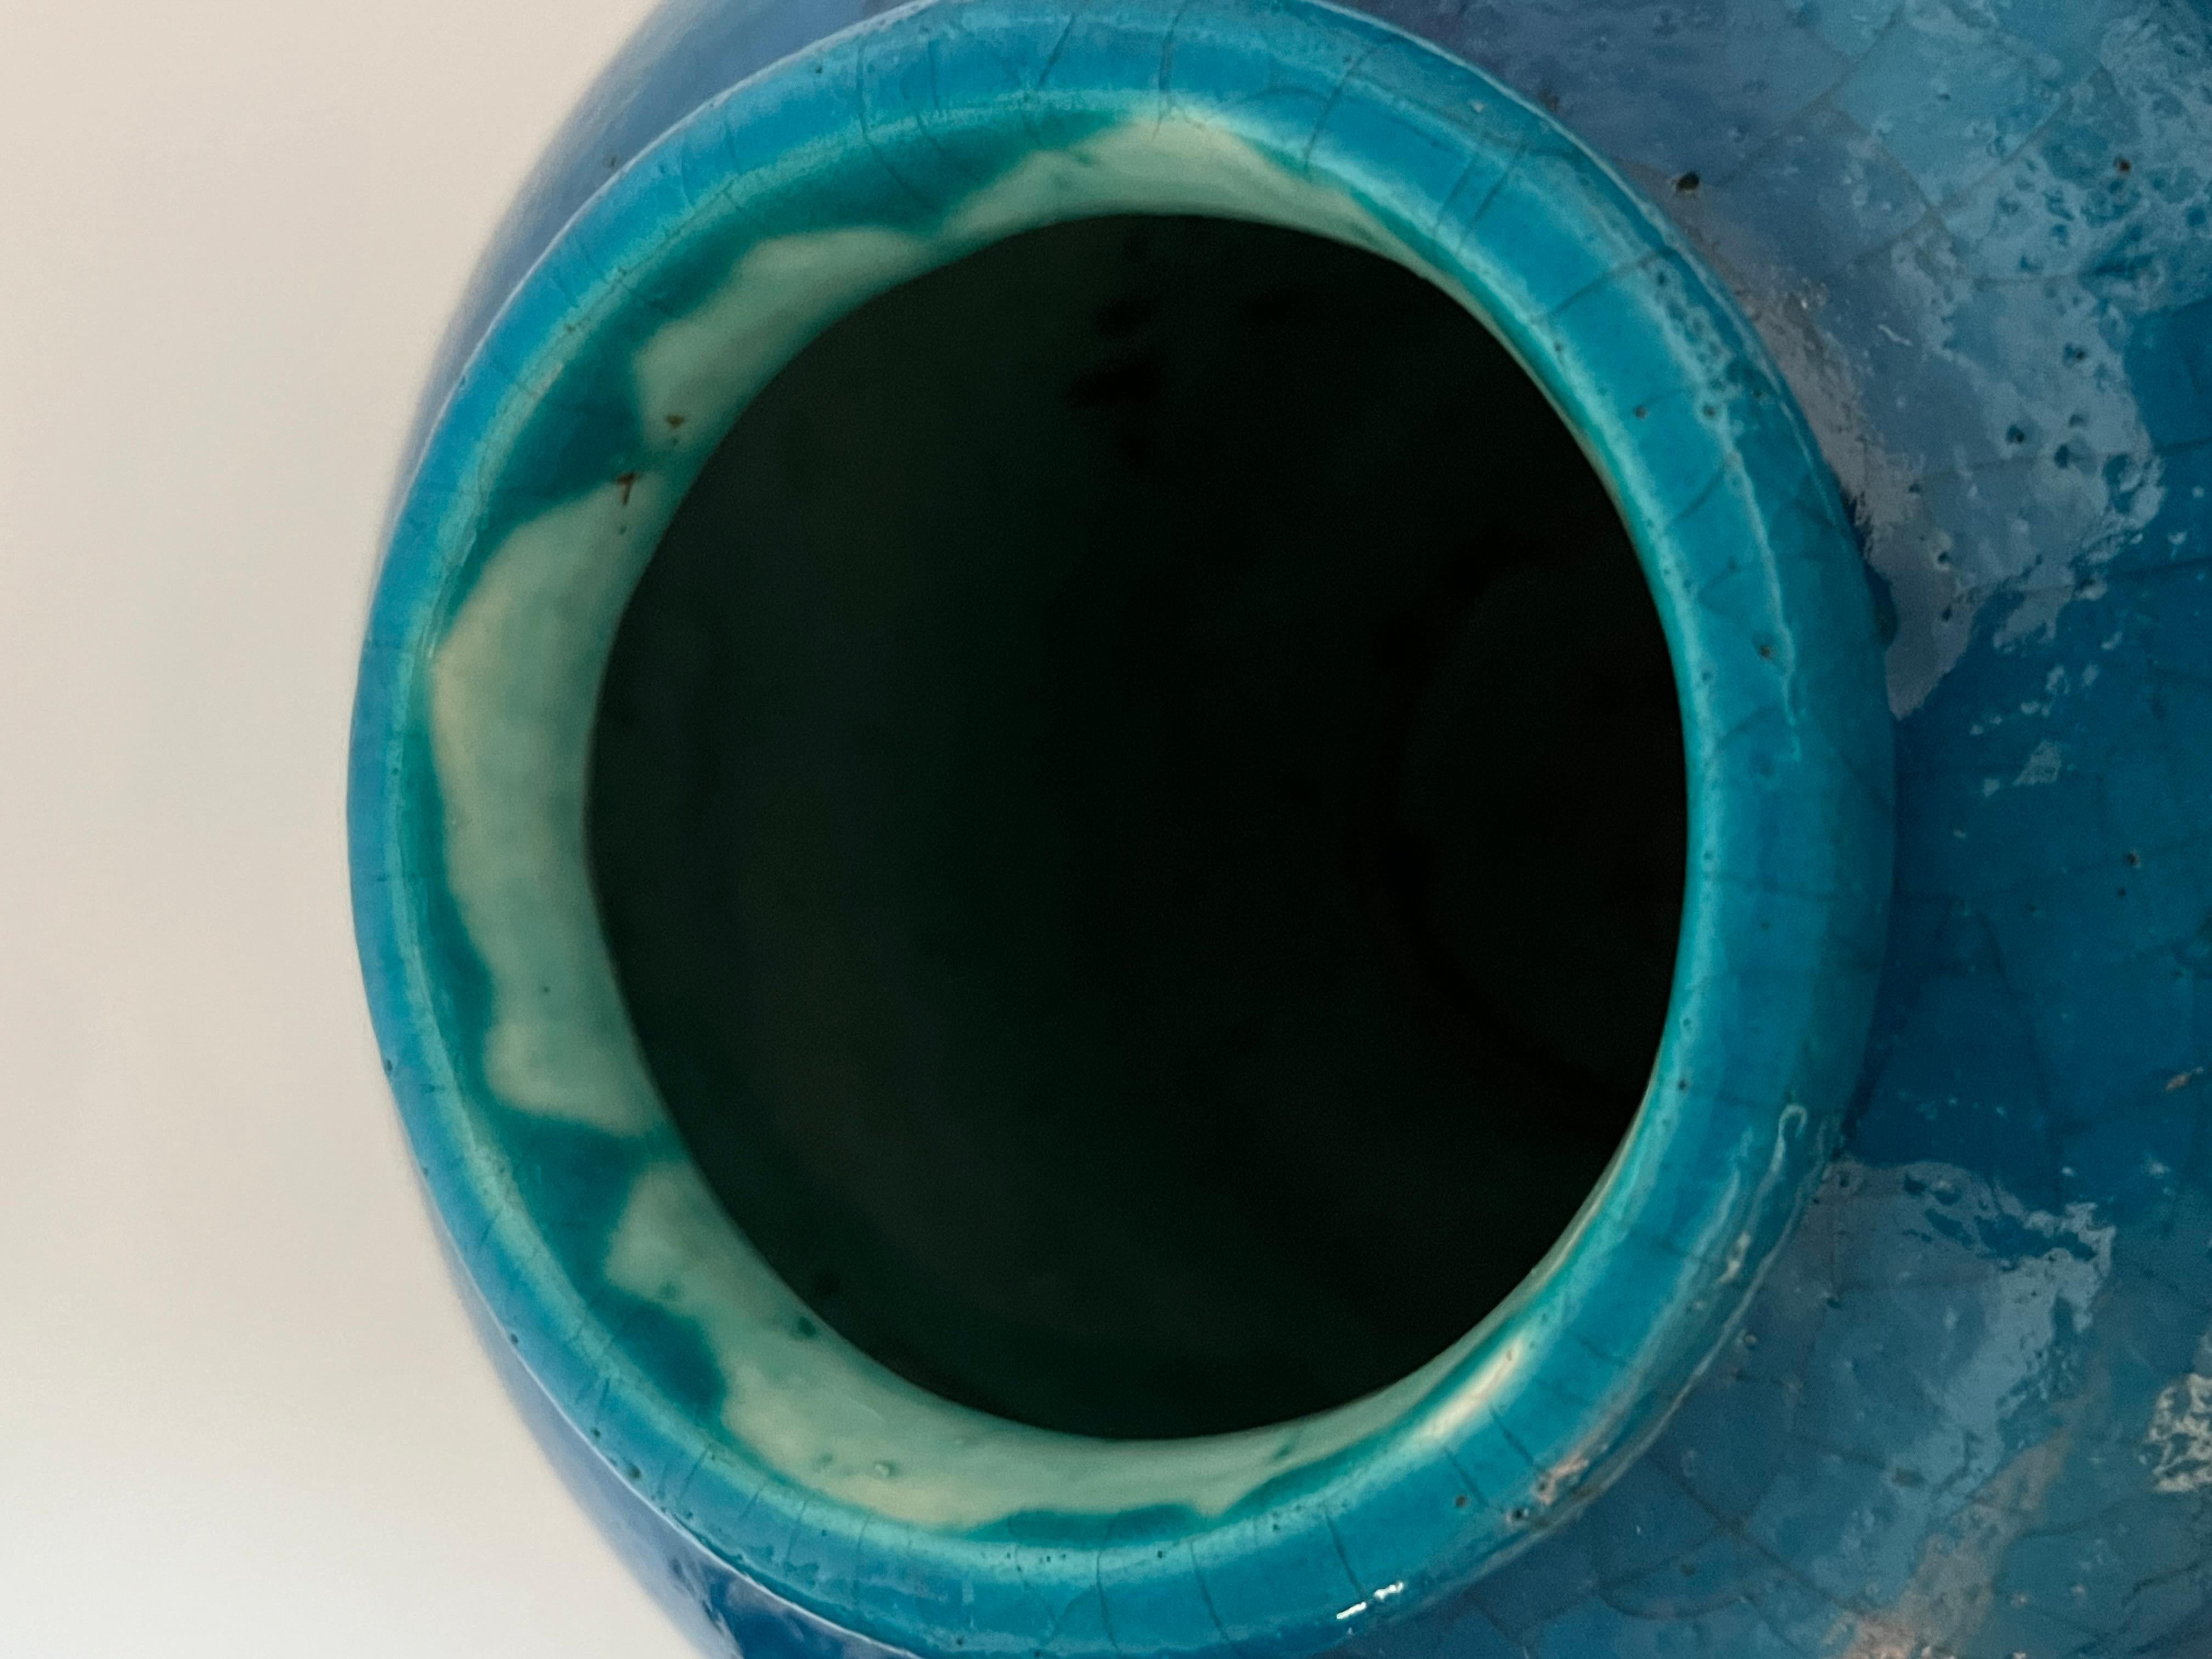 Diese ungewöhnliche Fayence-Vase in Form einer Doppelzwiebel ist in der Art von Edmond Lachenal, aber es gibt keine Markierungen auf dem Boden. Die reich gesprenkelte türkisblaue Glasur verleiht ihm das Gefühl echter ägyptischer Fayence.